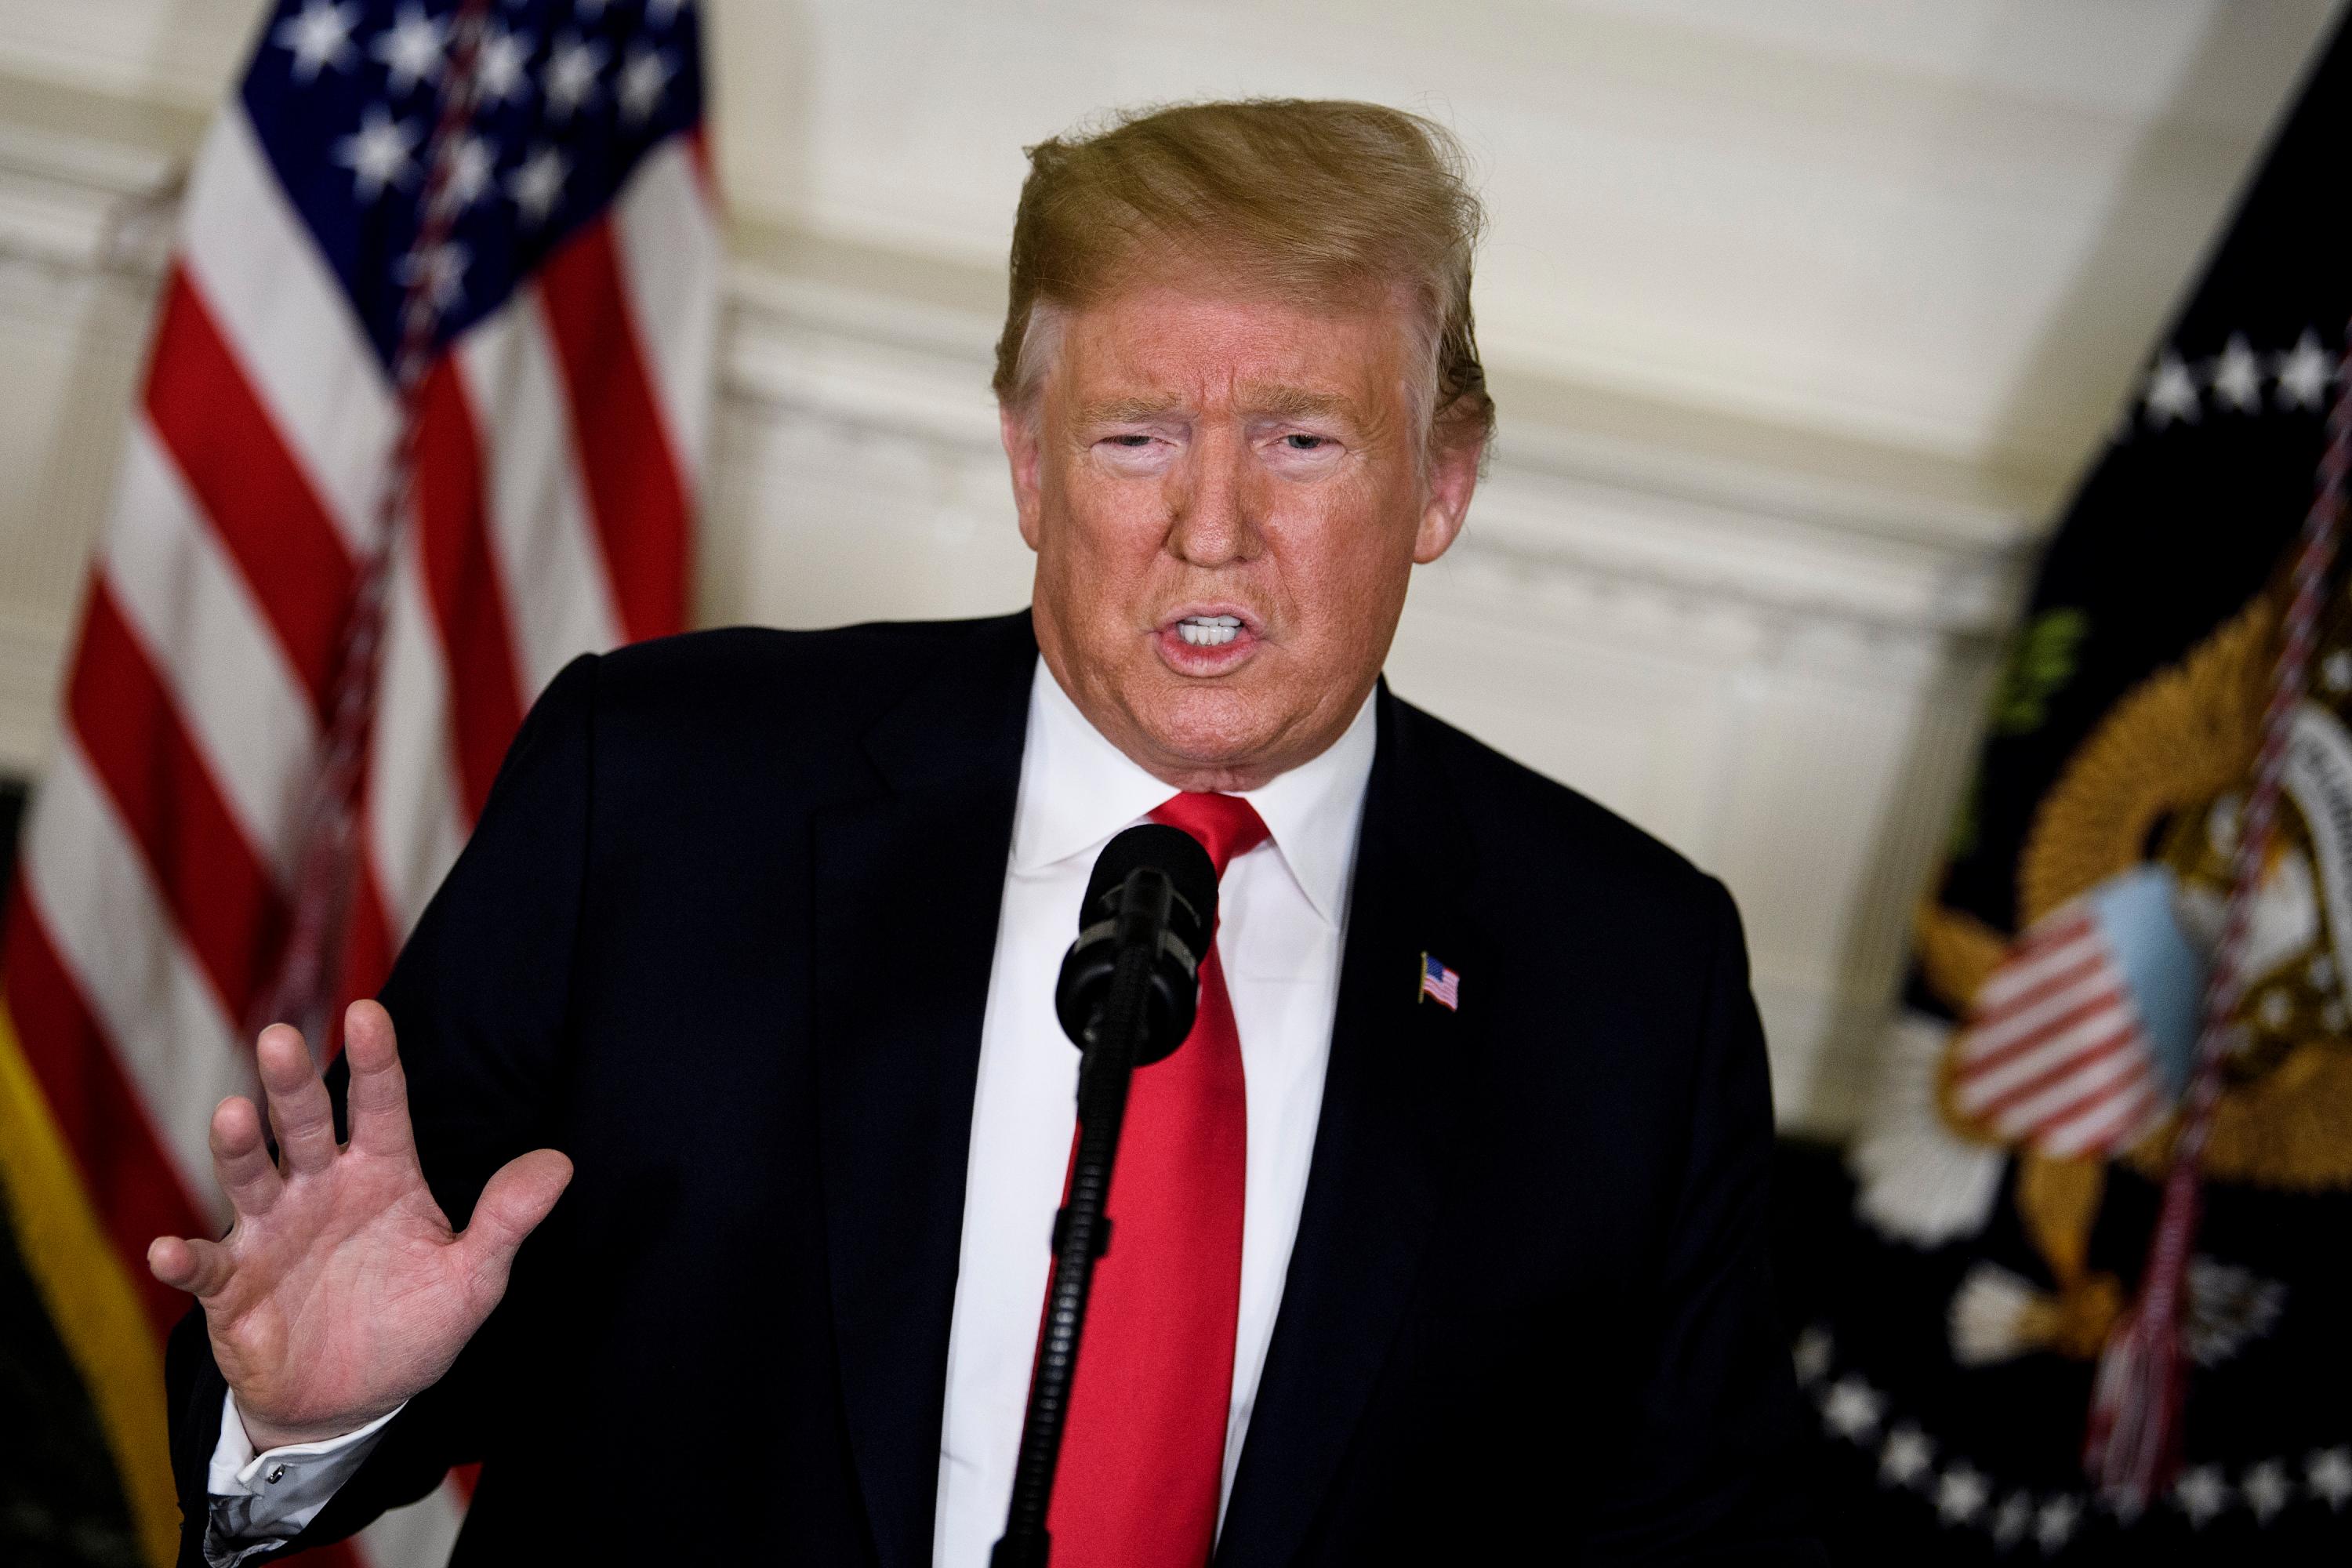 El presidente de Estados Unidos, Donald Trump, emite un pronunciamiento sobre migración y el muro fronterizo desde el salón de recepción diplomática de la Casa Blanca, el 19 de enero de 2019, en Washington, DC. Foto: AFP/ Brendan Smialowski.